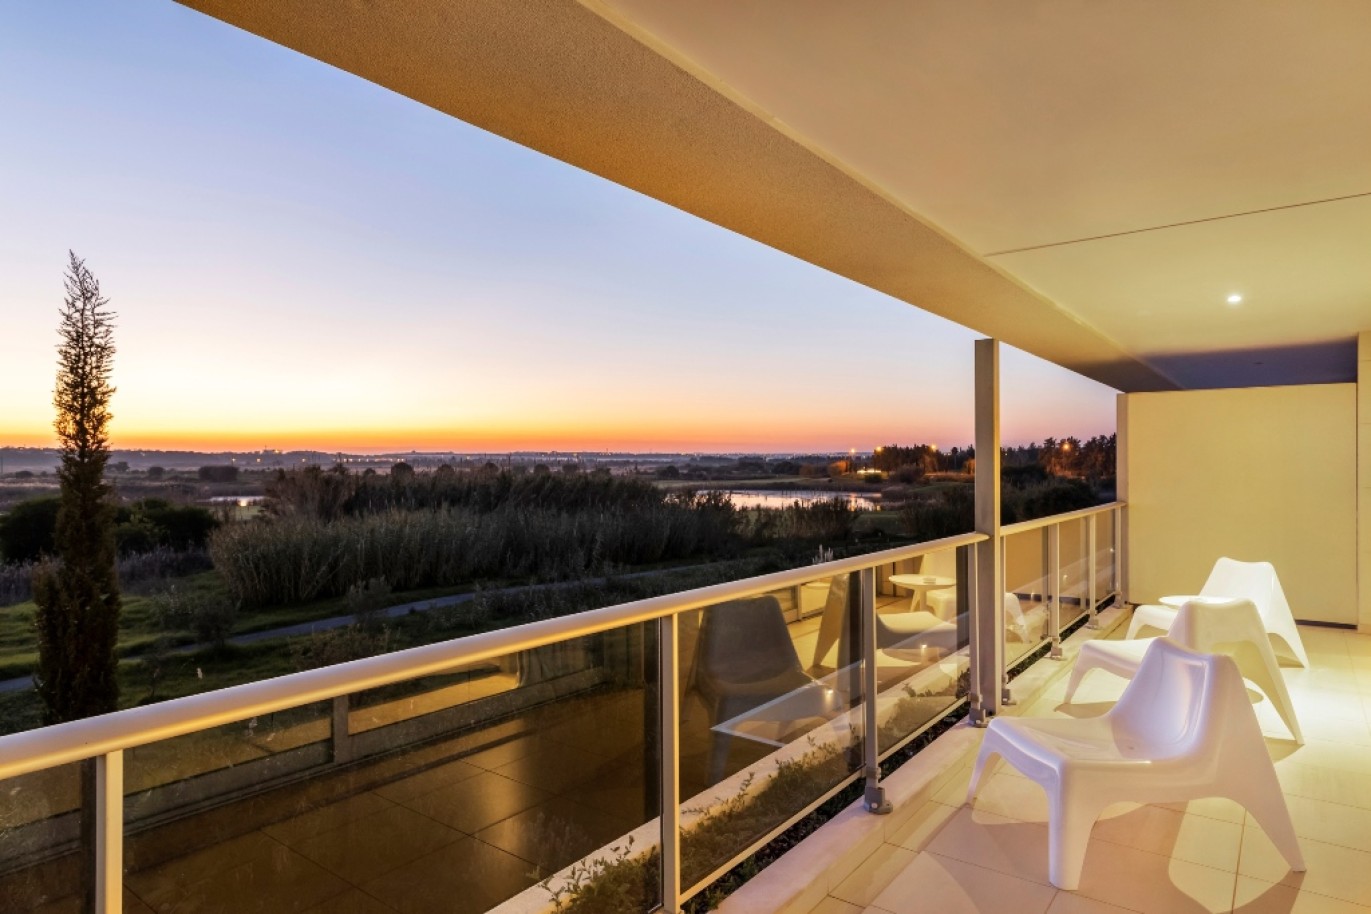 Moderno Duplex em Resort com piscina, para venda Vilamoura, Algarve_252296